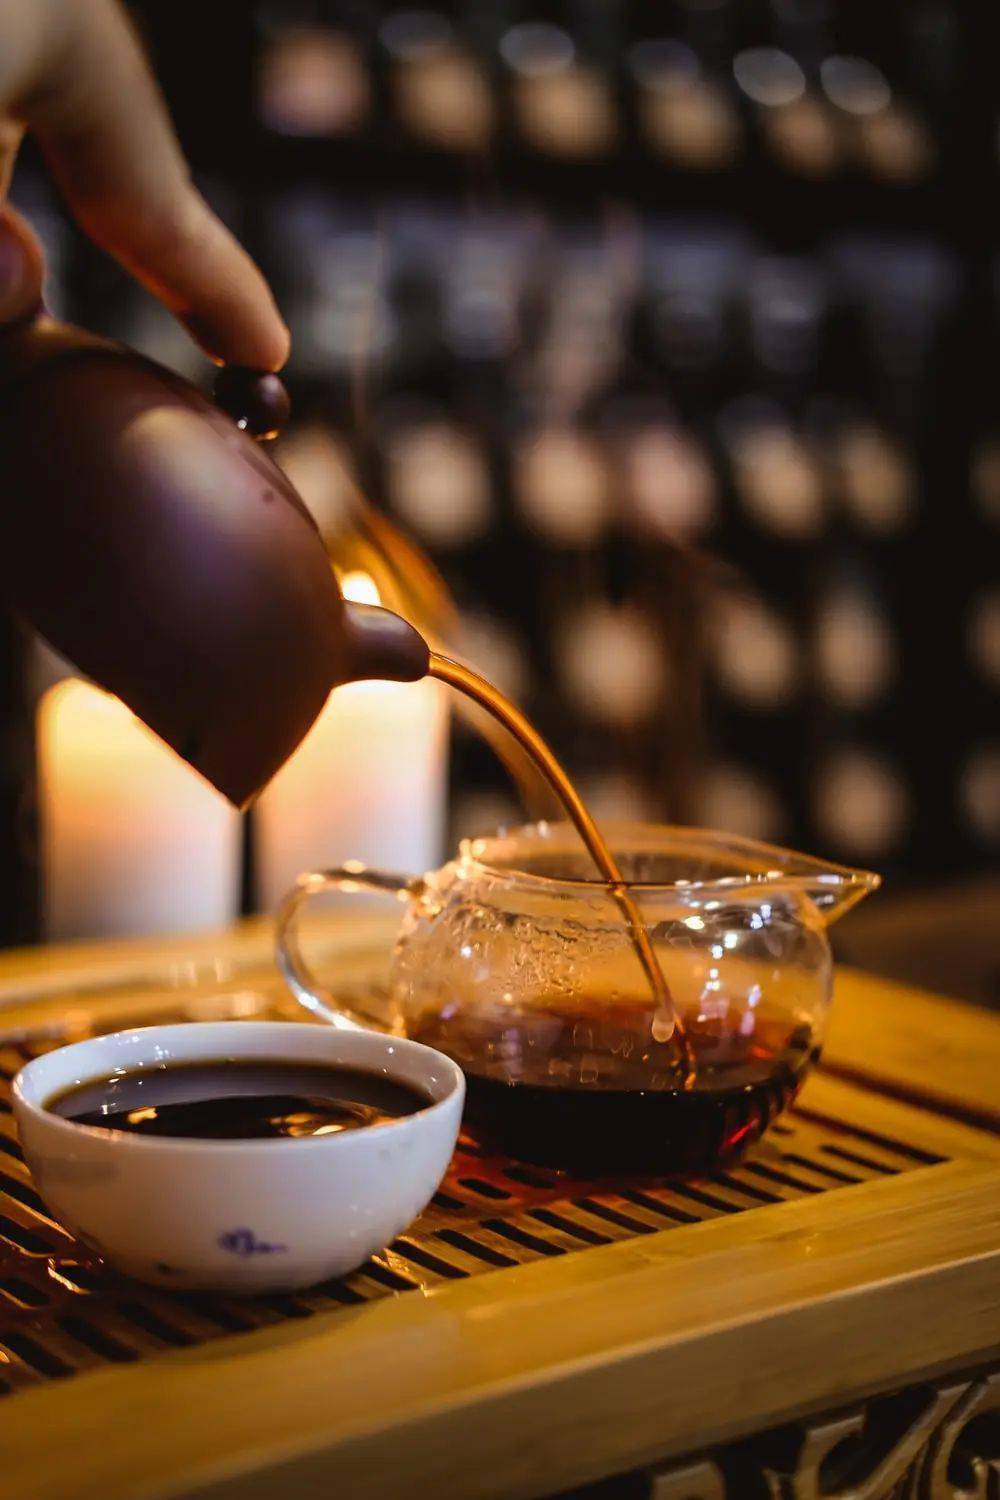 中国饮茶文化,如何走向全球便利化?